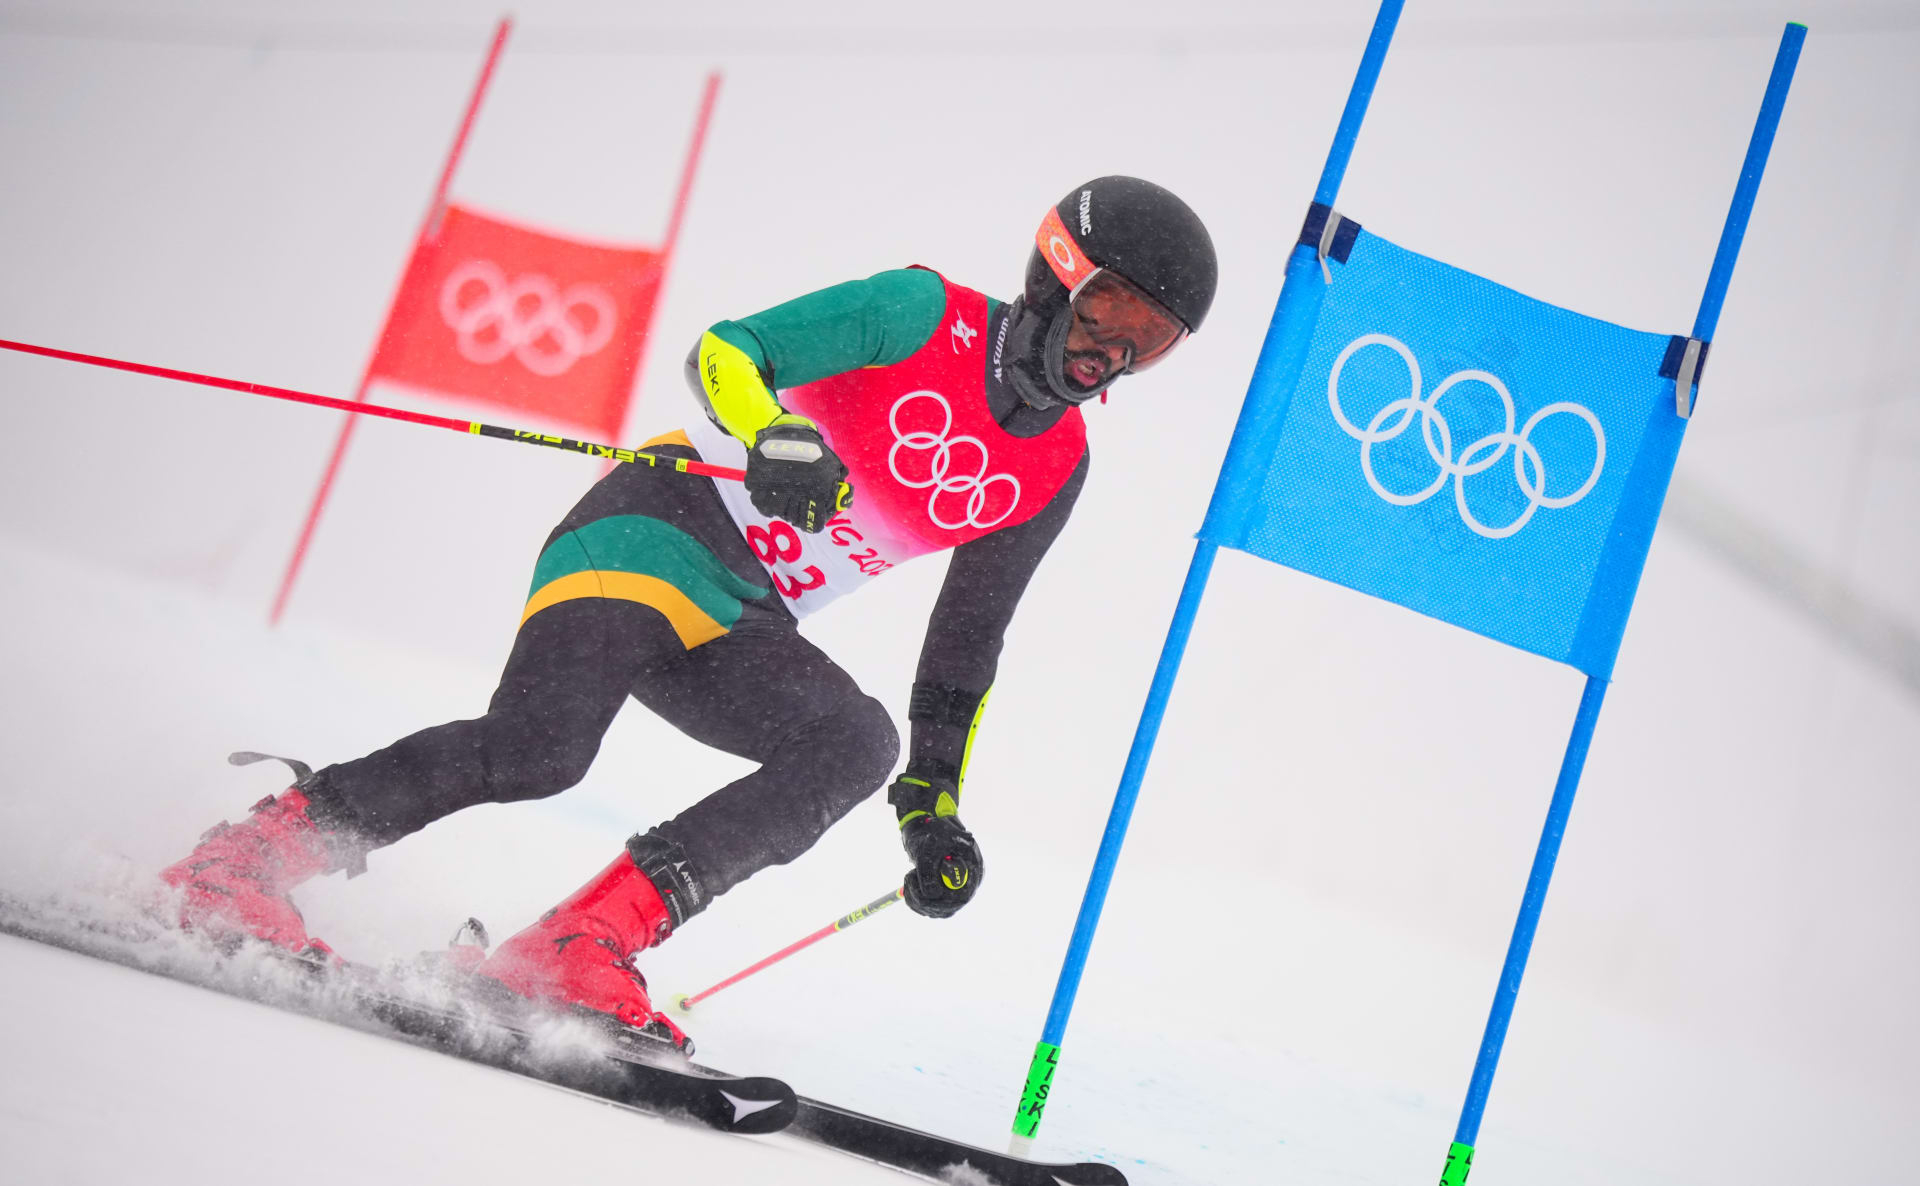 Benjamin Alexander to dotáhl na olympiádu, ačkoliv poprvé lyžoval až v 32 letech.